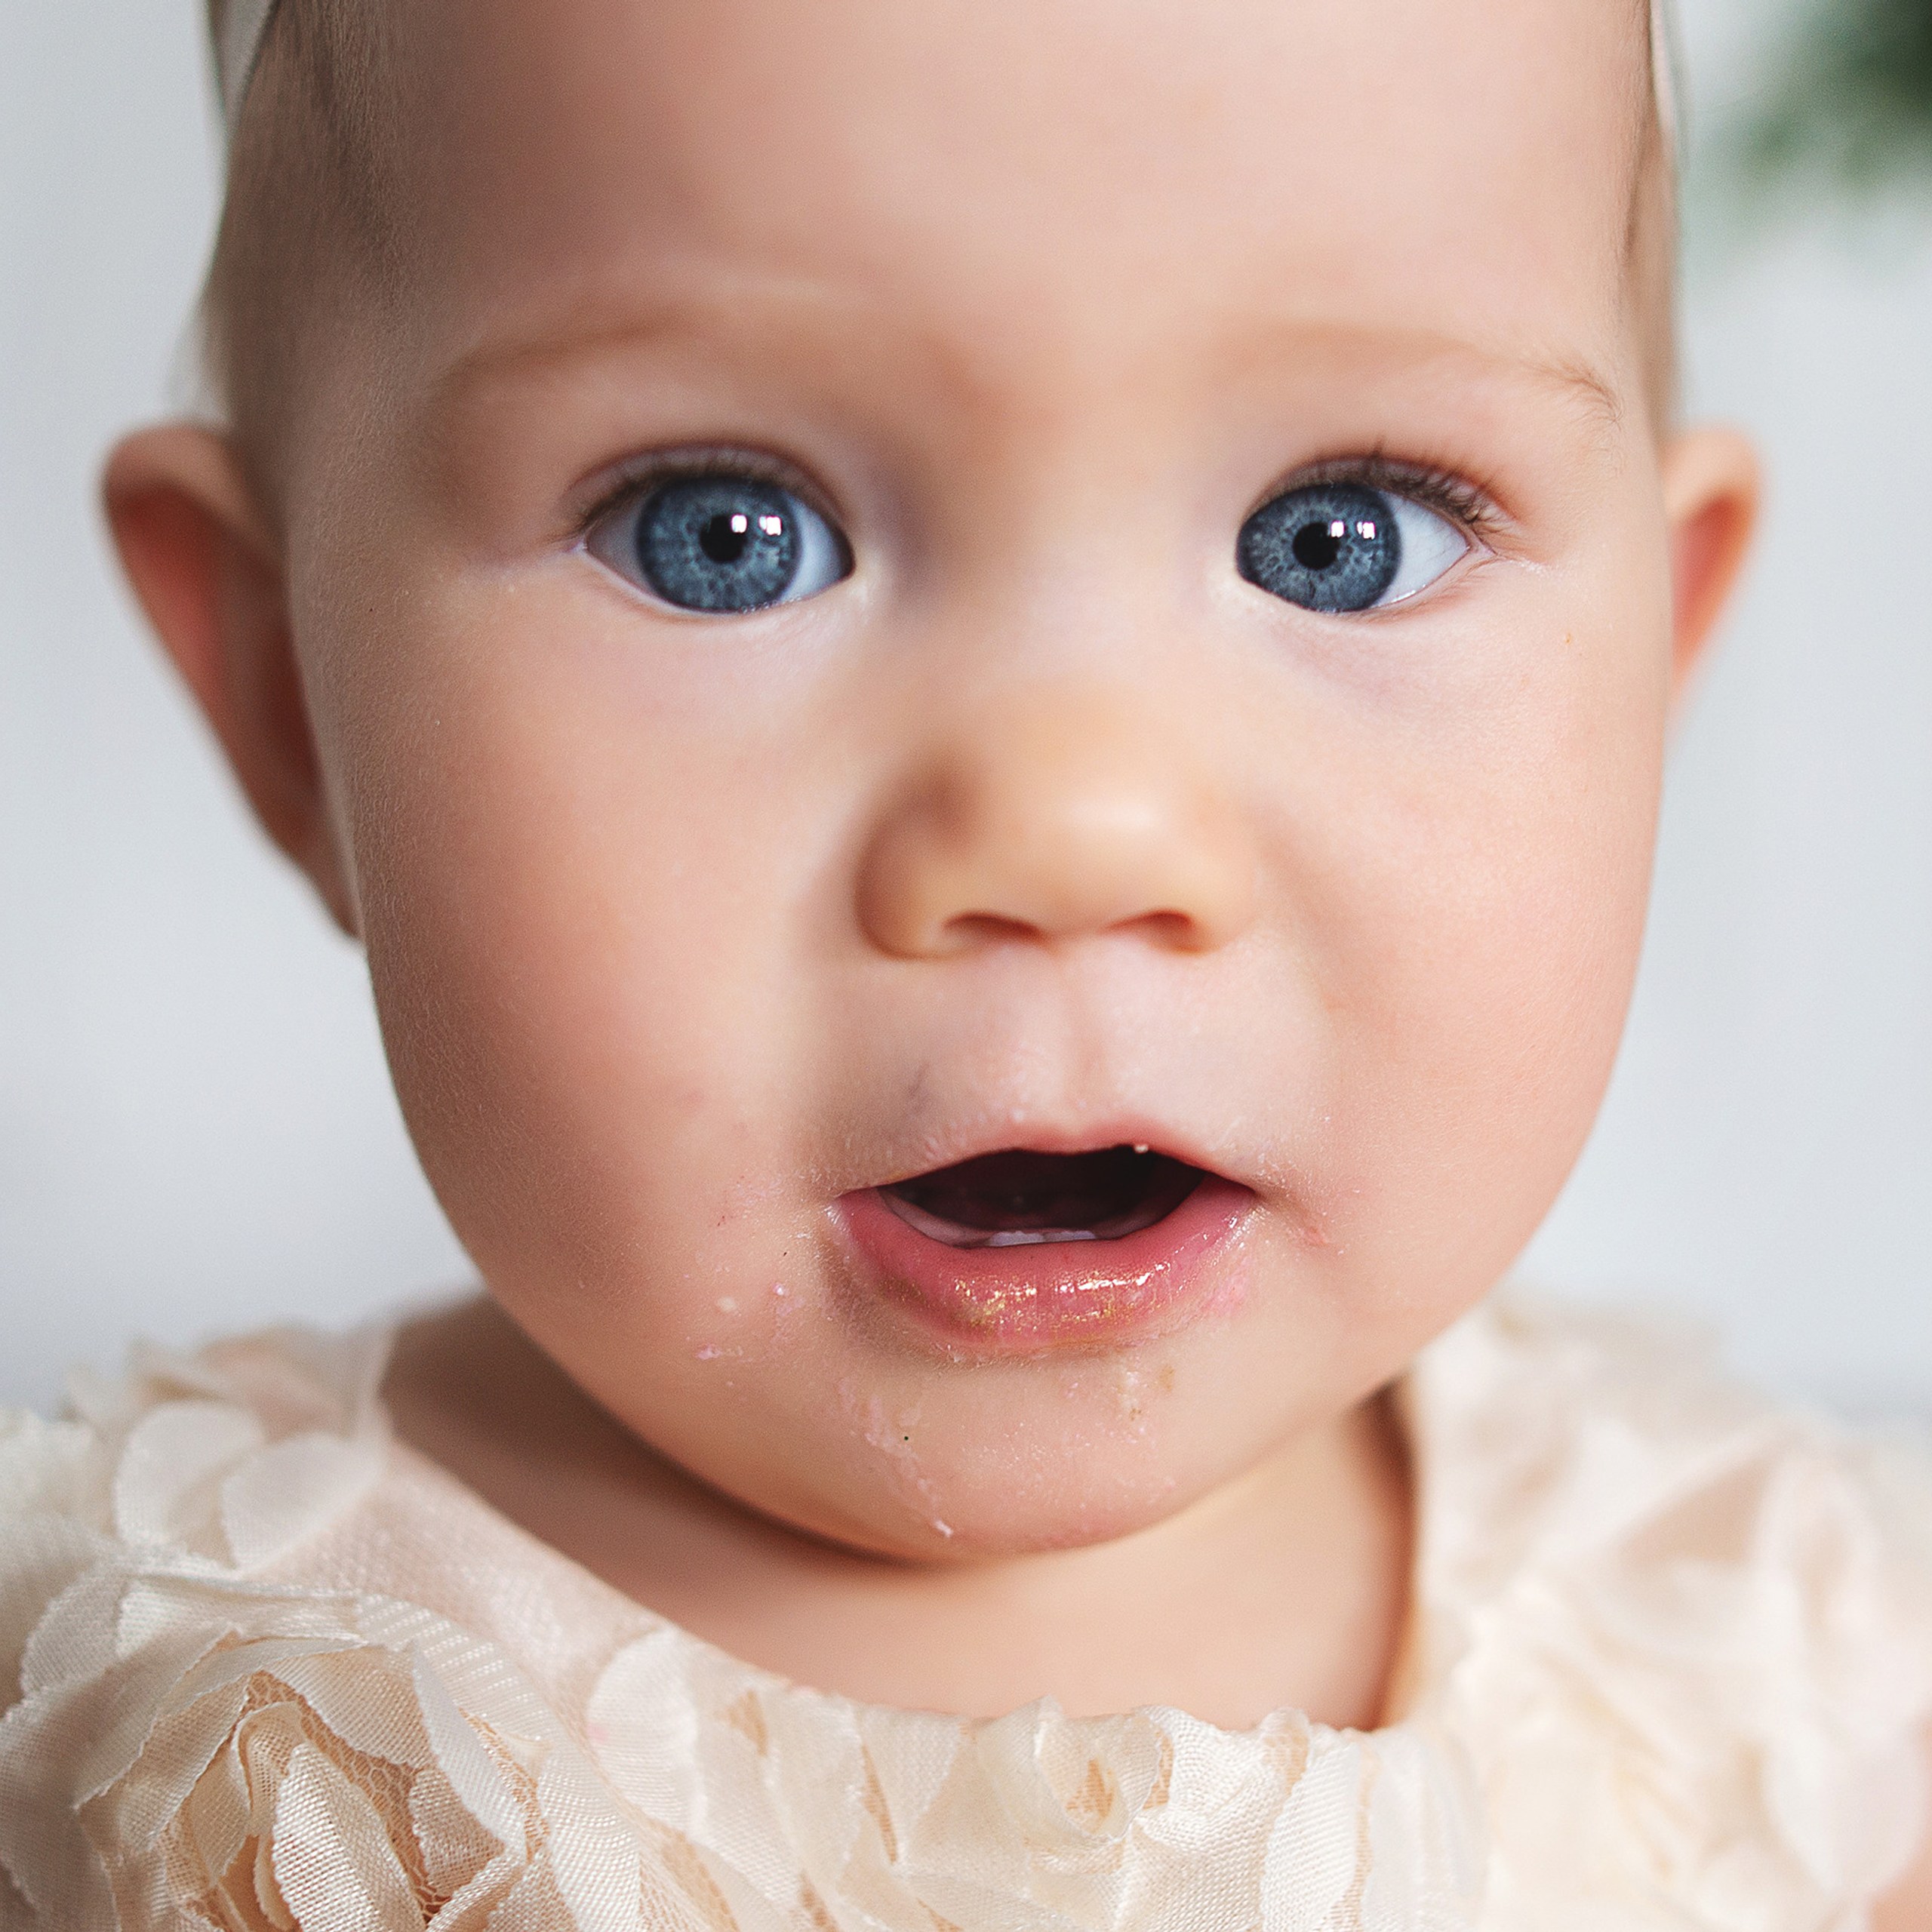 Ребенок с большими серыми глазами 1 годика. Ребенок блондин с голубыми глазами 1 годик. Ребенок 3 года бледный